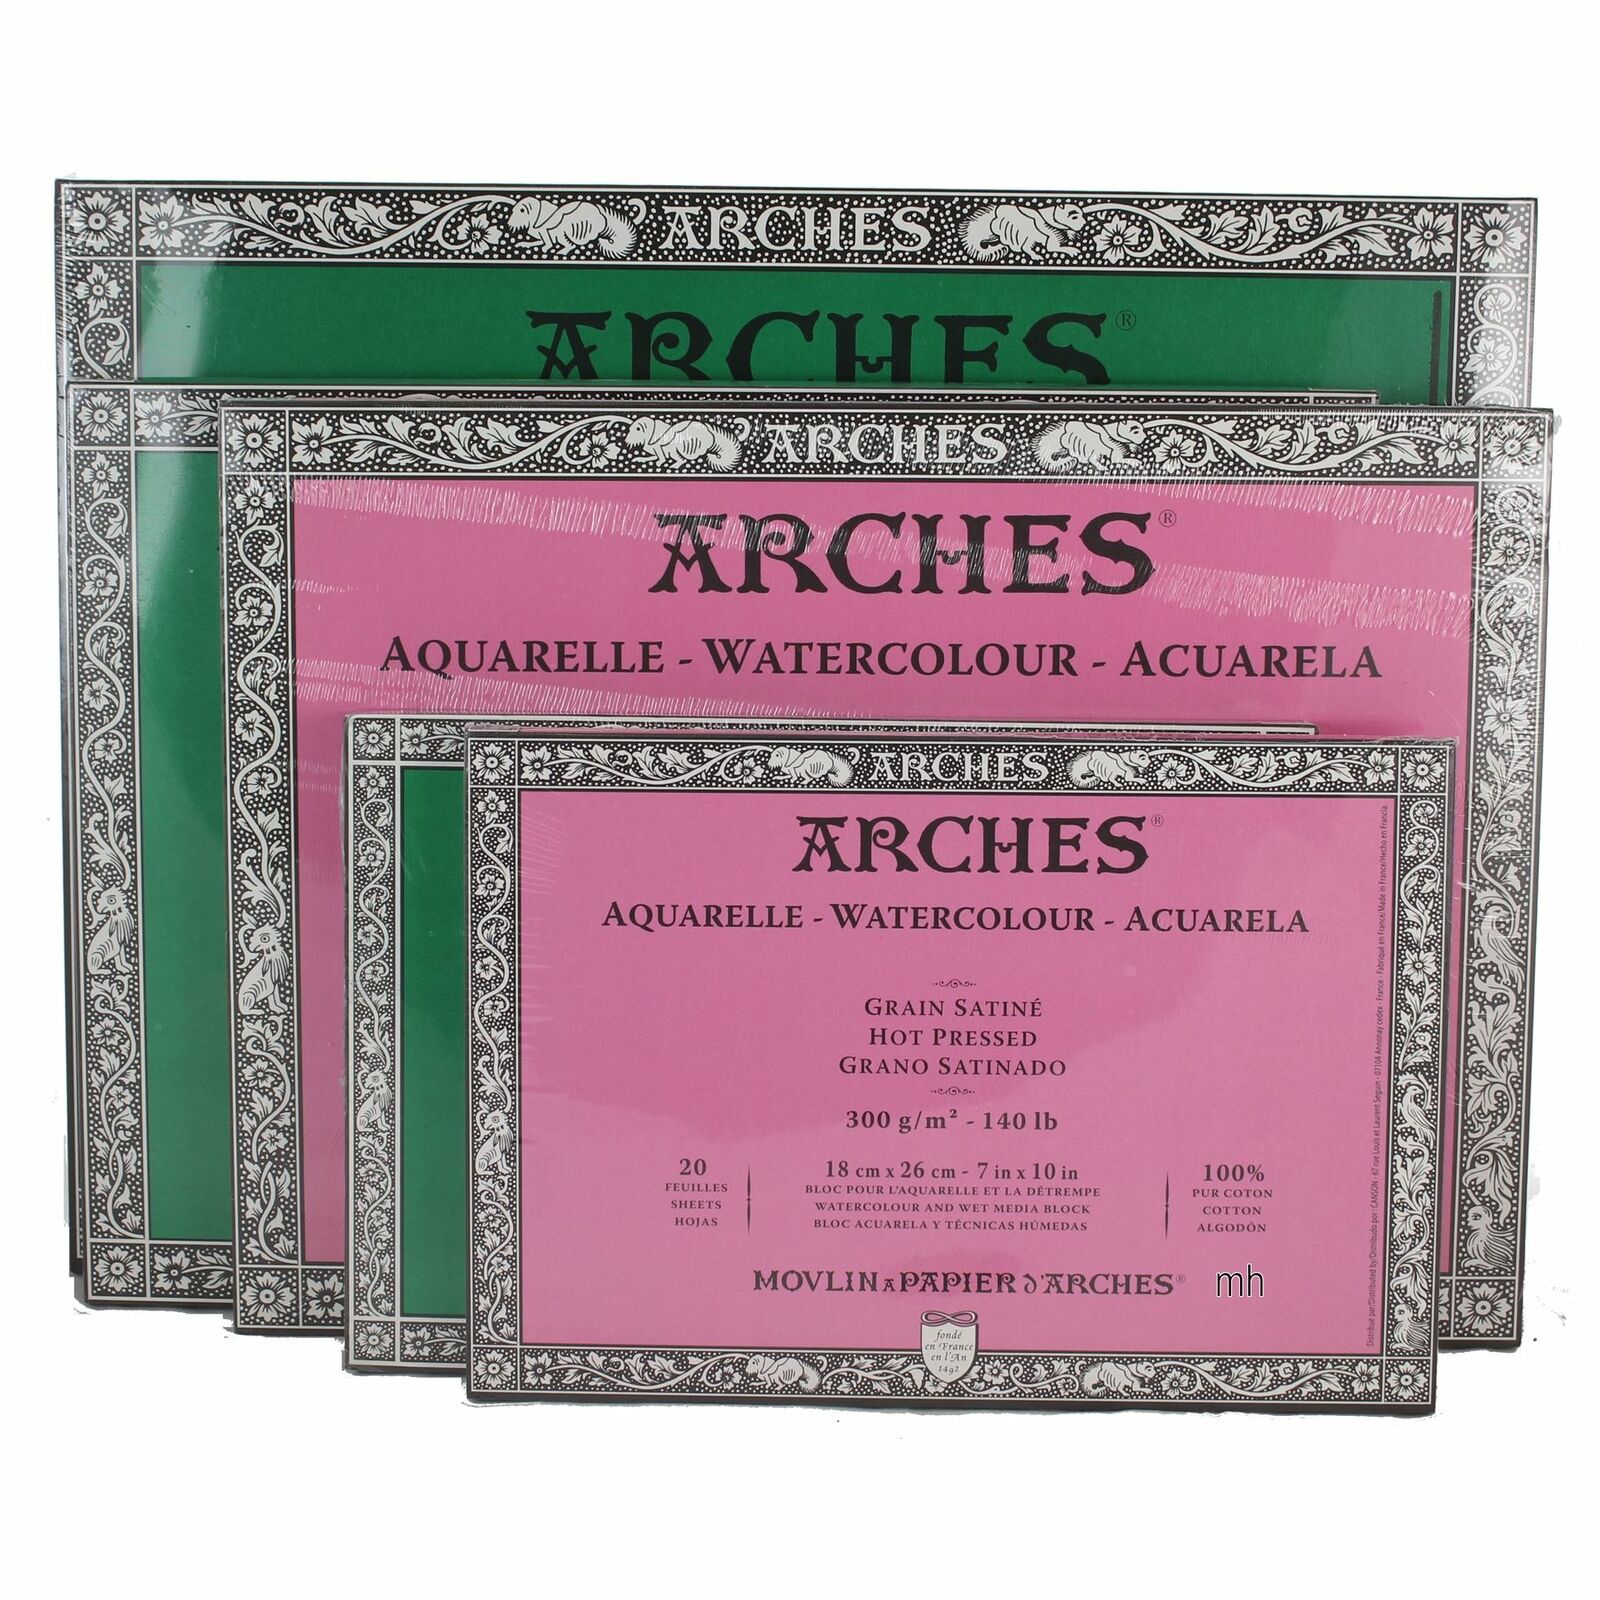 watercolour paper Aquarelle arches block professional pads cotton painting